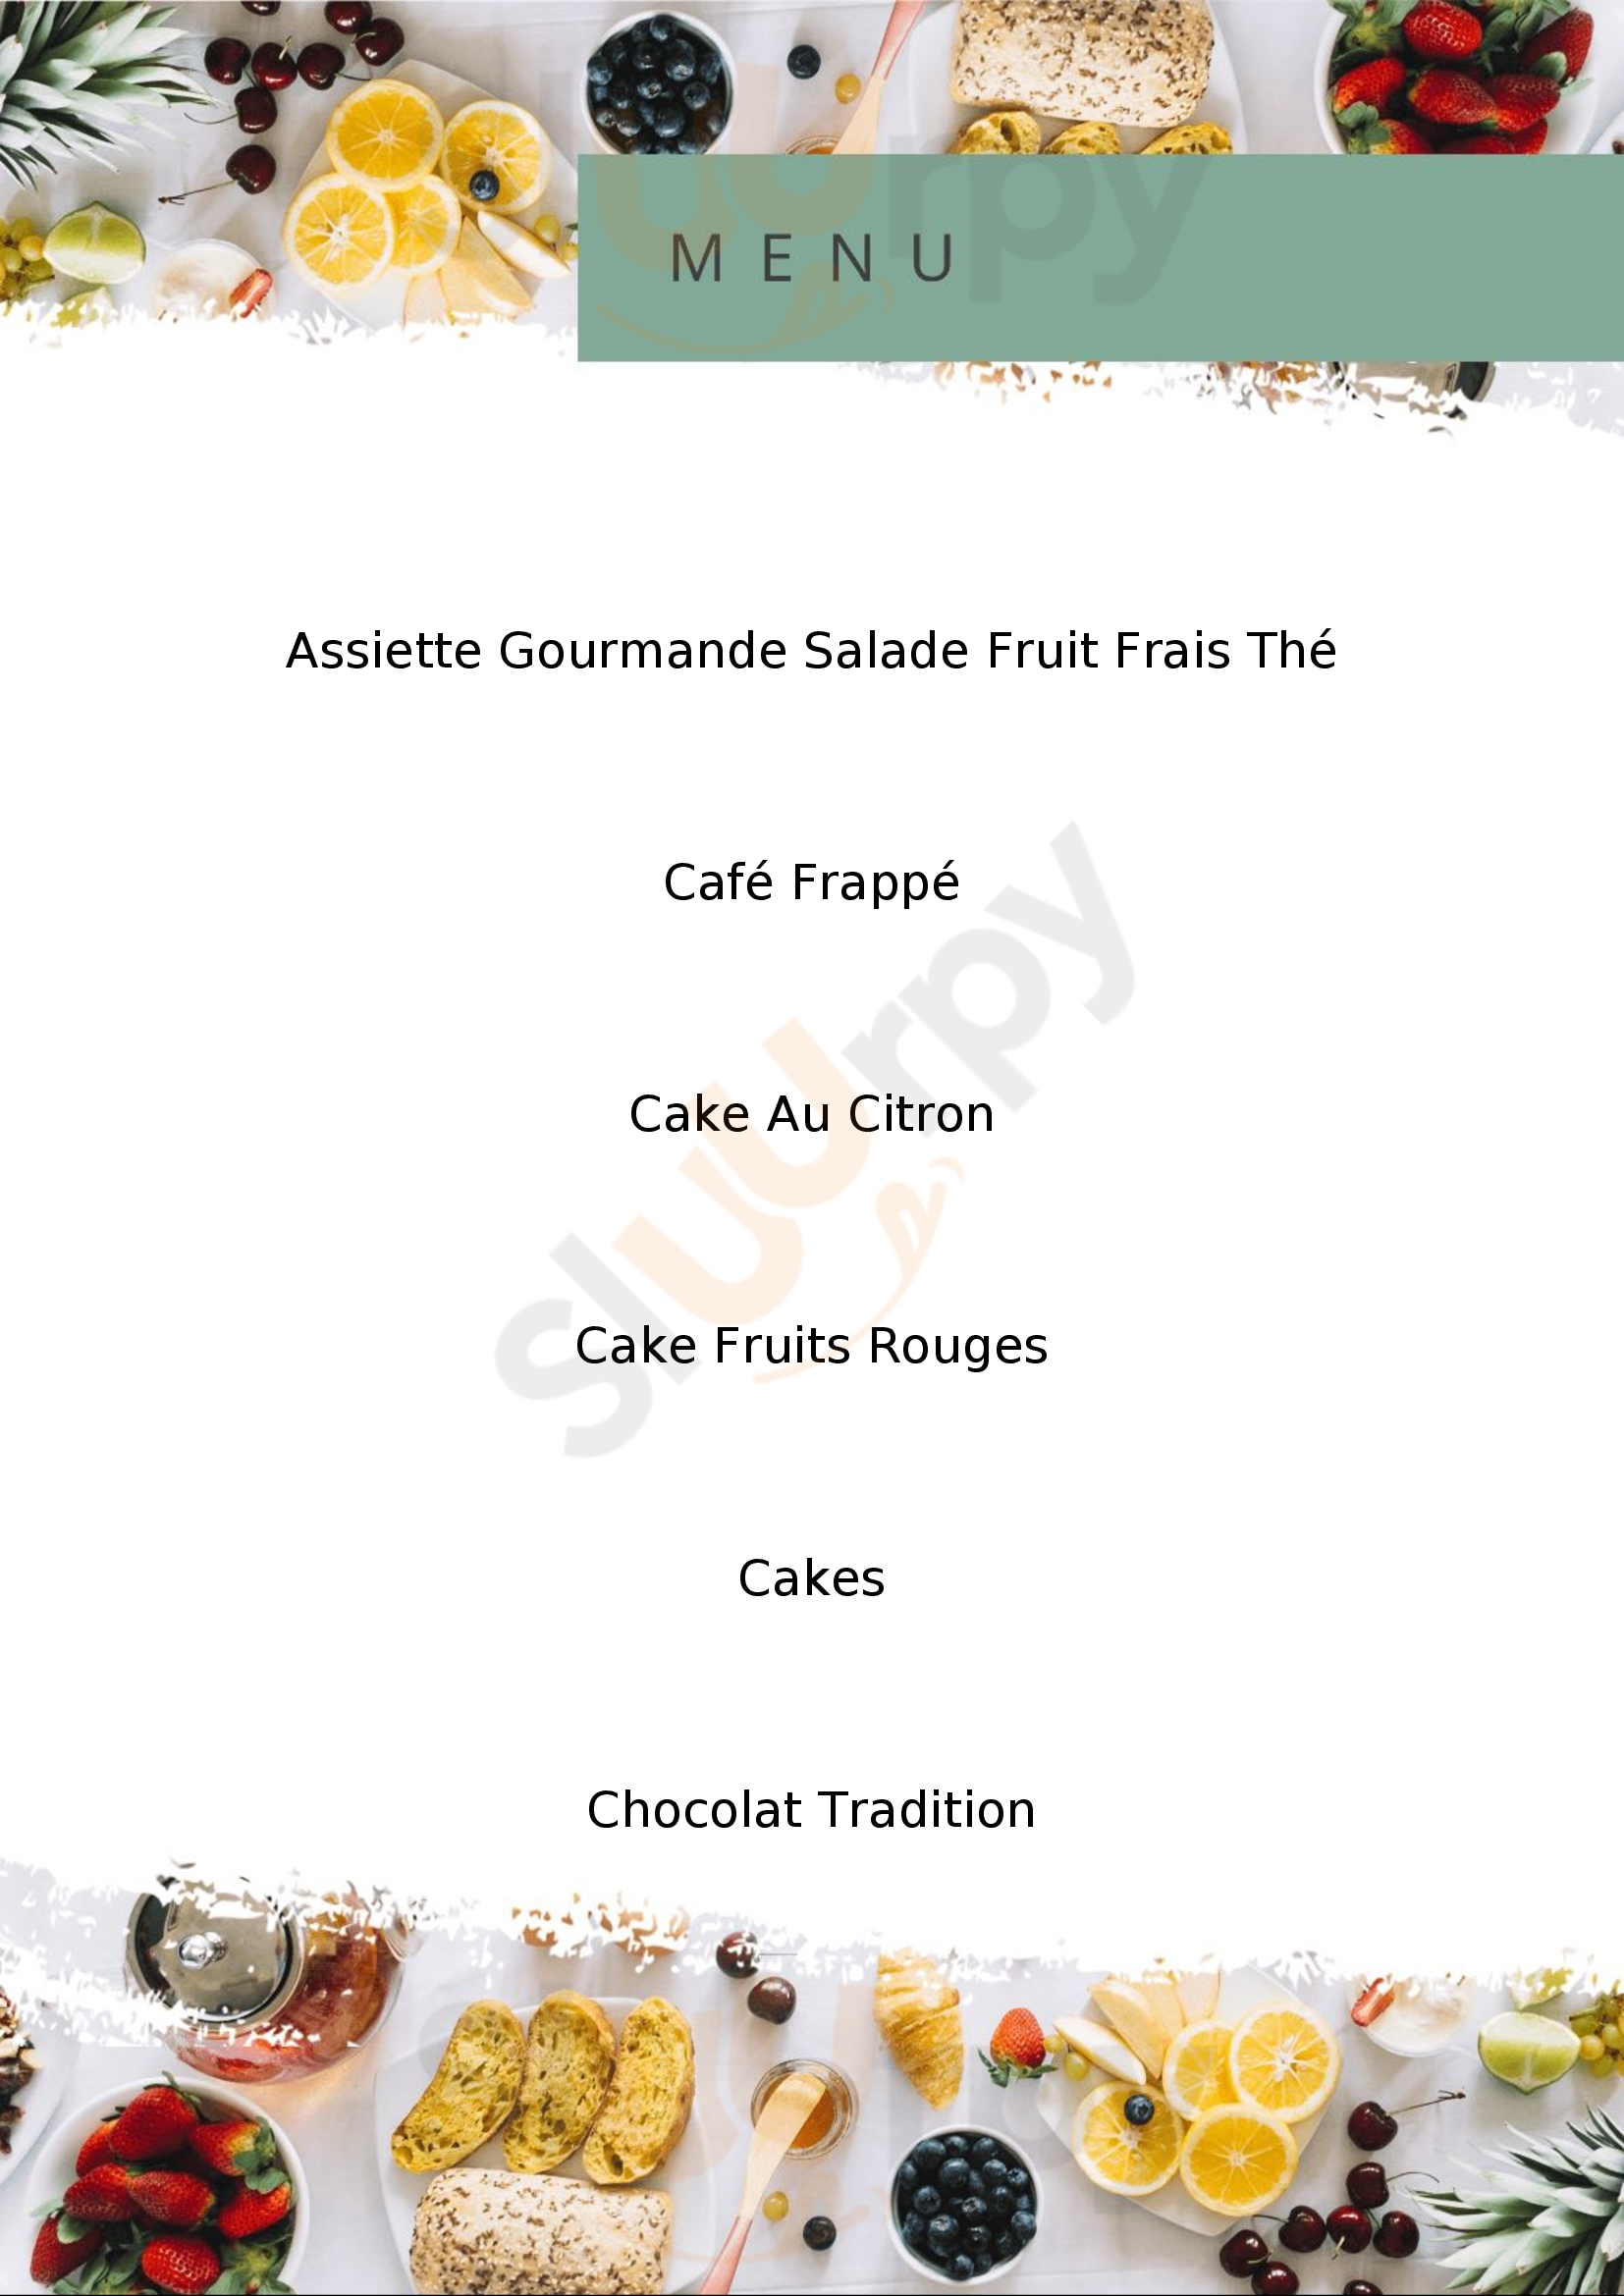 Cakes Et Gourmandises - Maison Blondel Honfleur Menu - 1